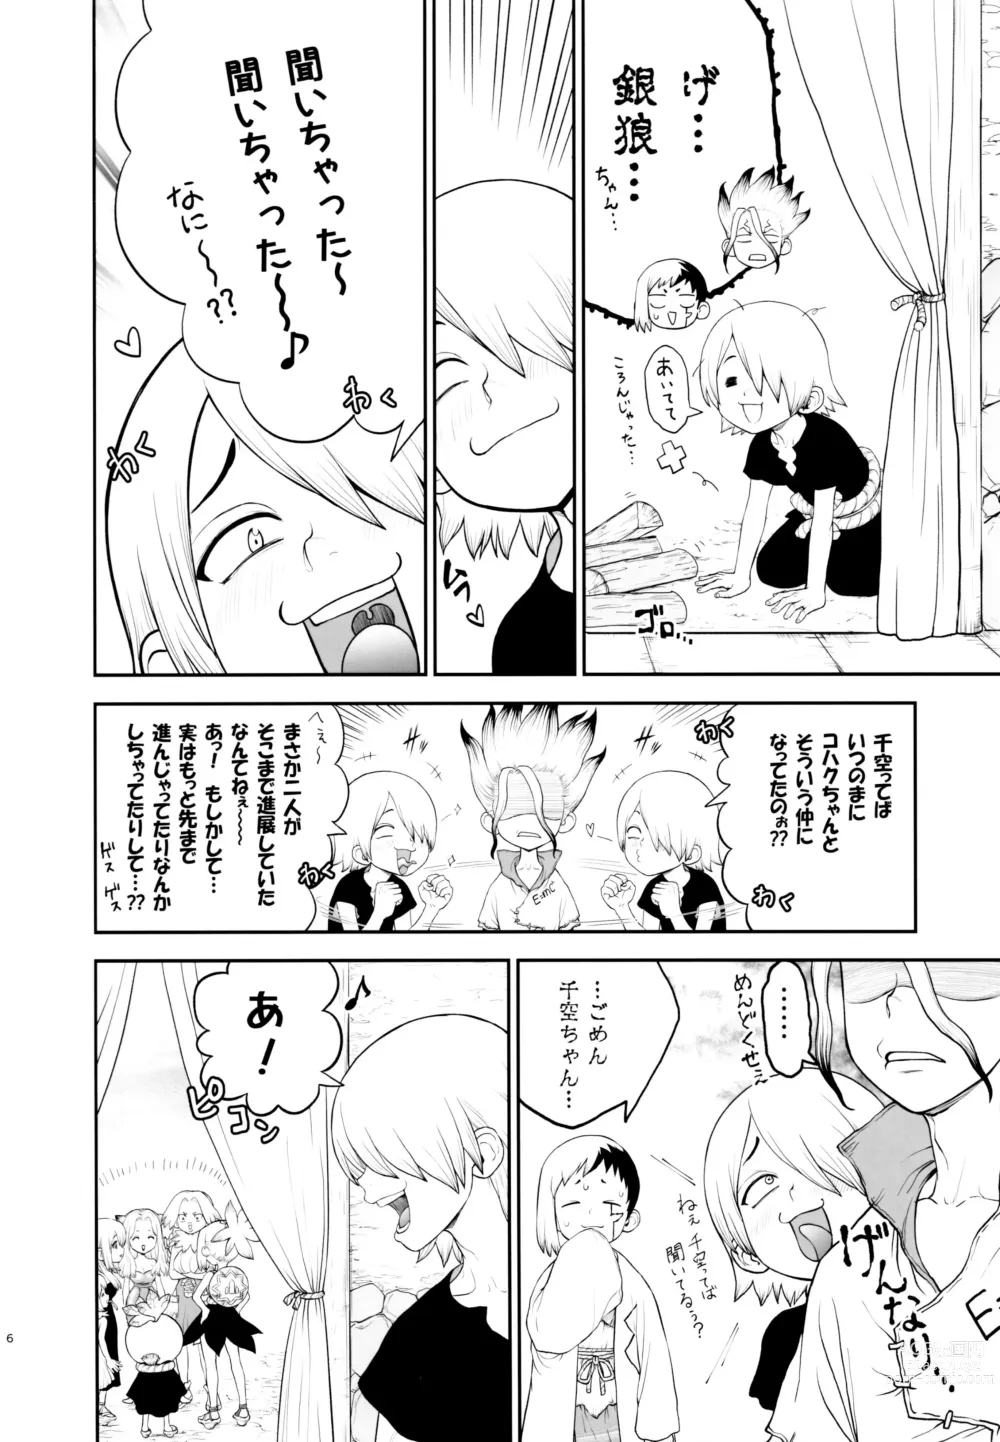 Page 6 of doujinshi Kimi no Hajimete wa Dare nandai?